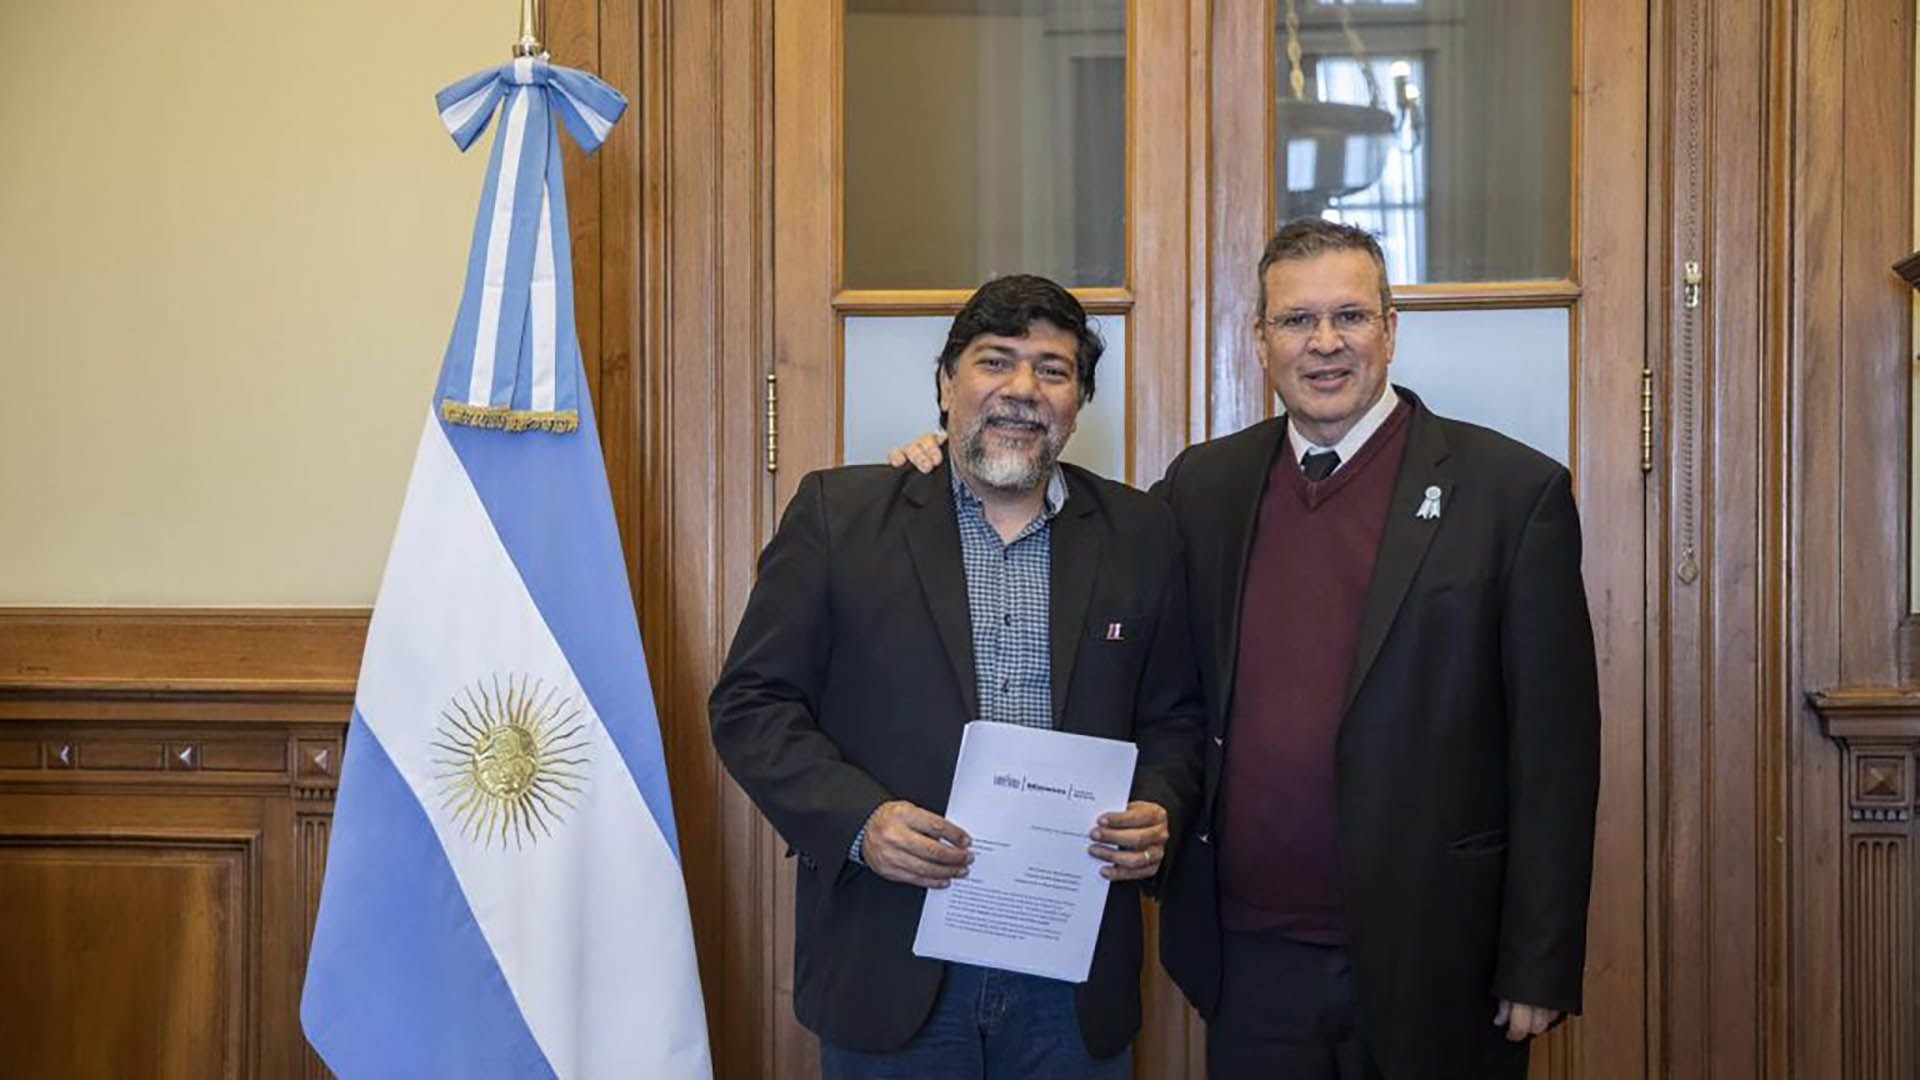 El ministro de cultura de la nación, Tristán Bauer, junto al ministro de cultura de Misiones, Joselo Schuap (crédito: Cultura Misiones)